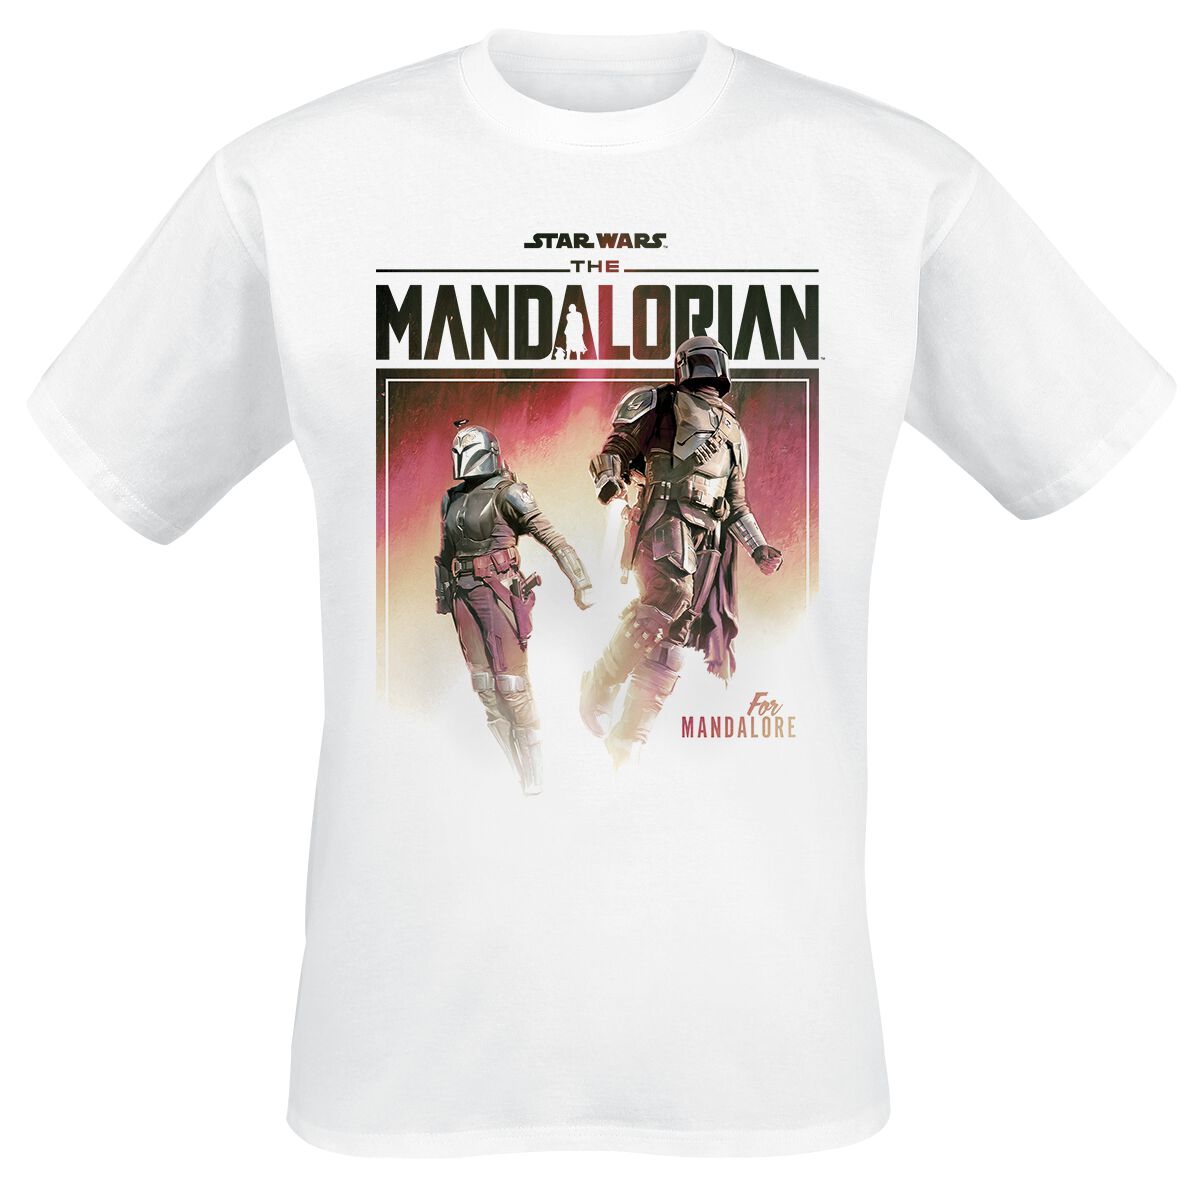 Star Wars T-Shirt - The Mandalorian - Season 3 - For Mandalore - S bis XL - für Männer - Größe L - weiß  - EMP exklusives Merchandise!